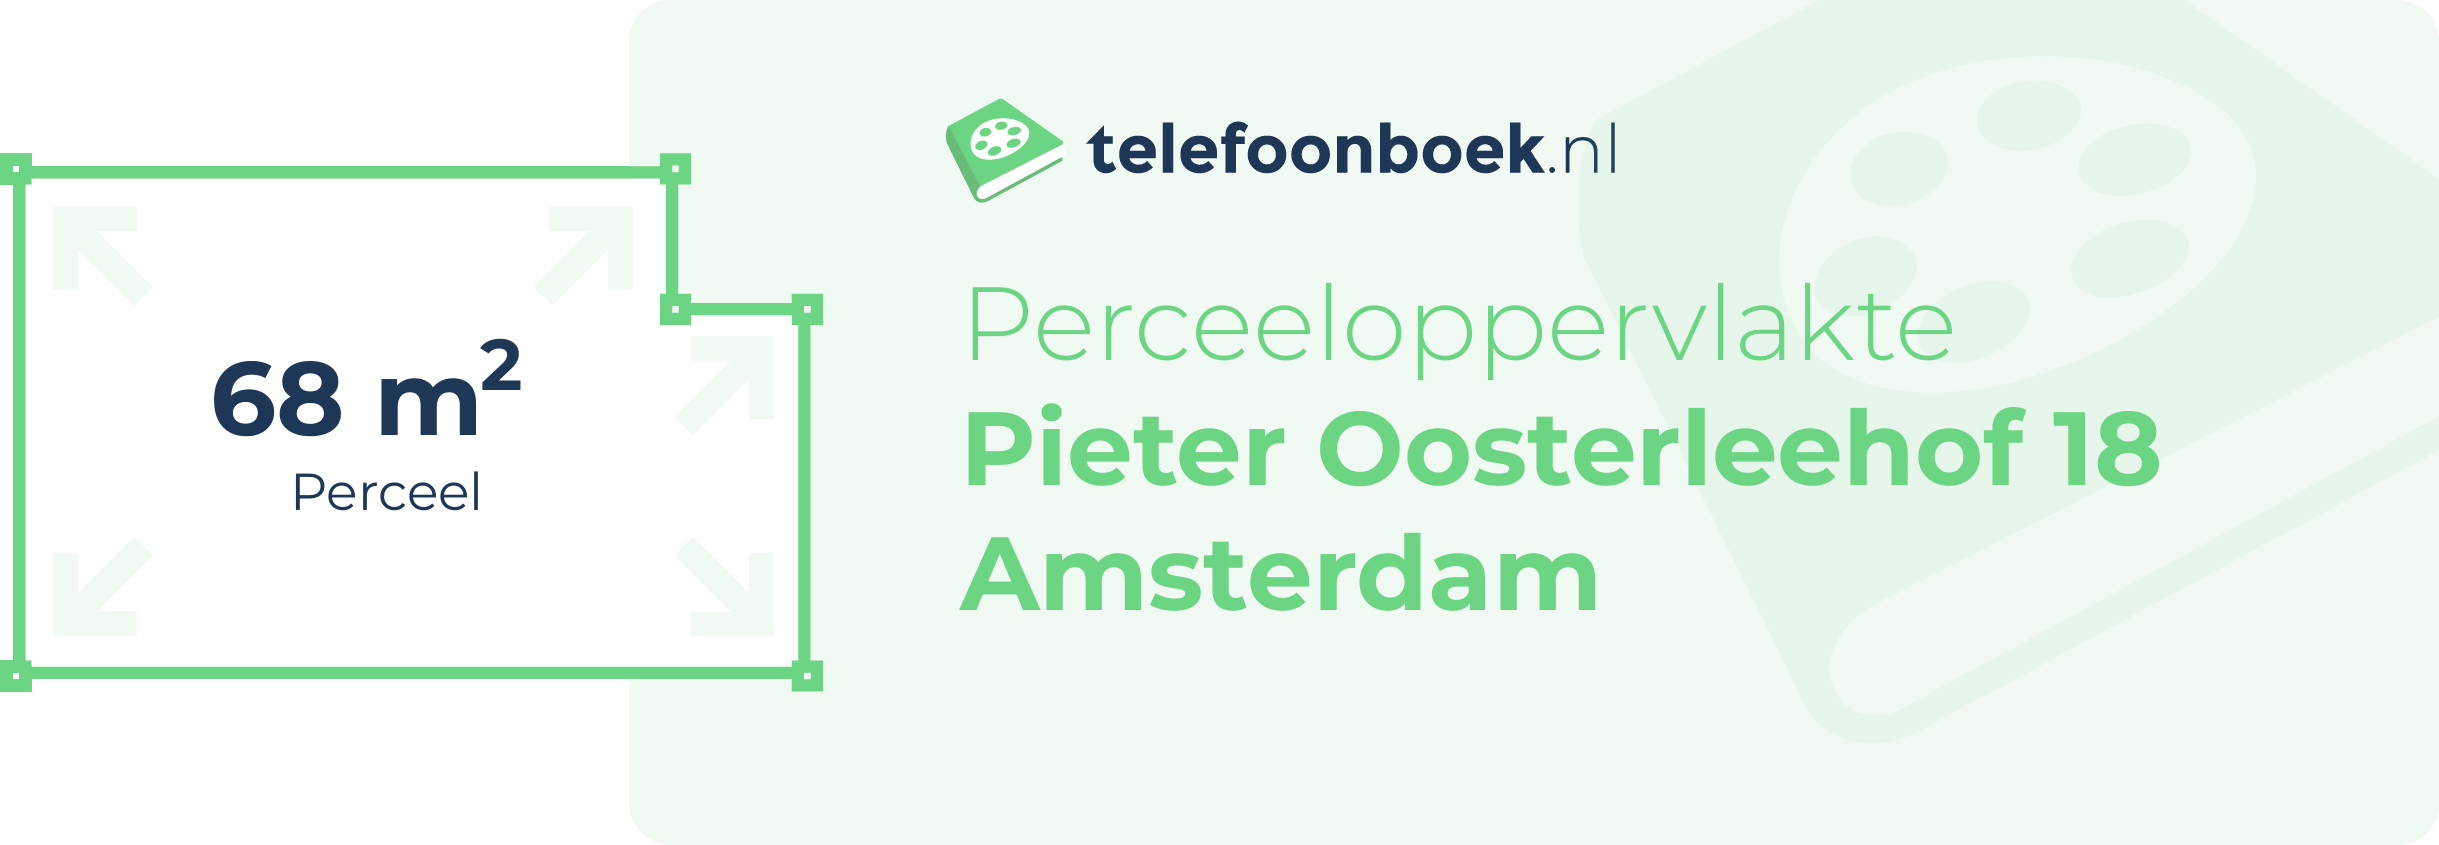 Perceeloppervlakte Pieter Oosterleehof 18 Amsterdam